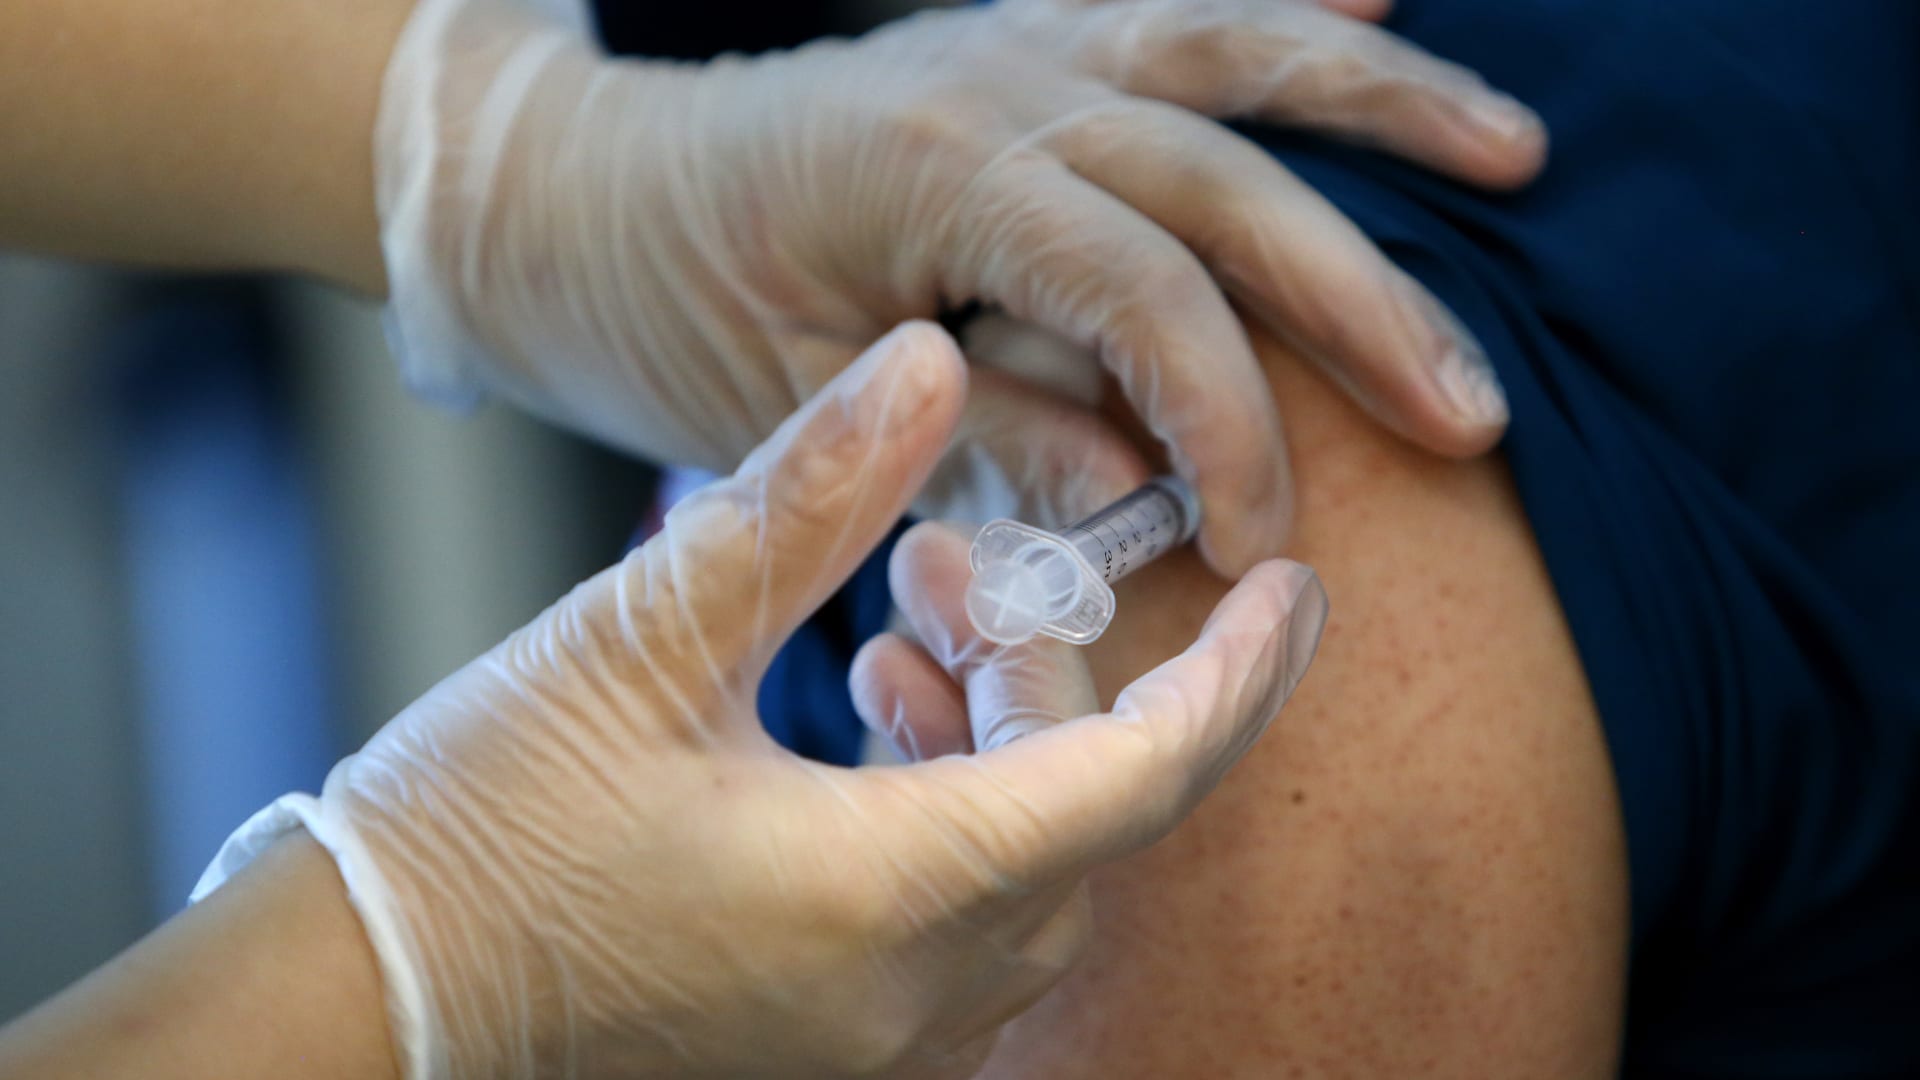  دراسة تربط الآثار الجانبية للقاح كوفيد باستجابة أكبر للأجسام المضادة